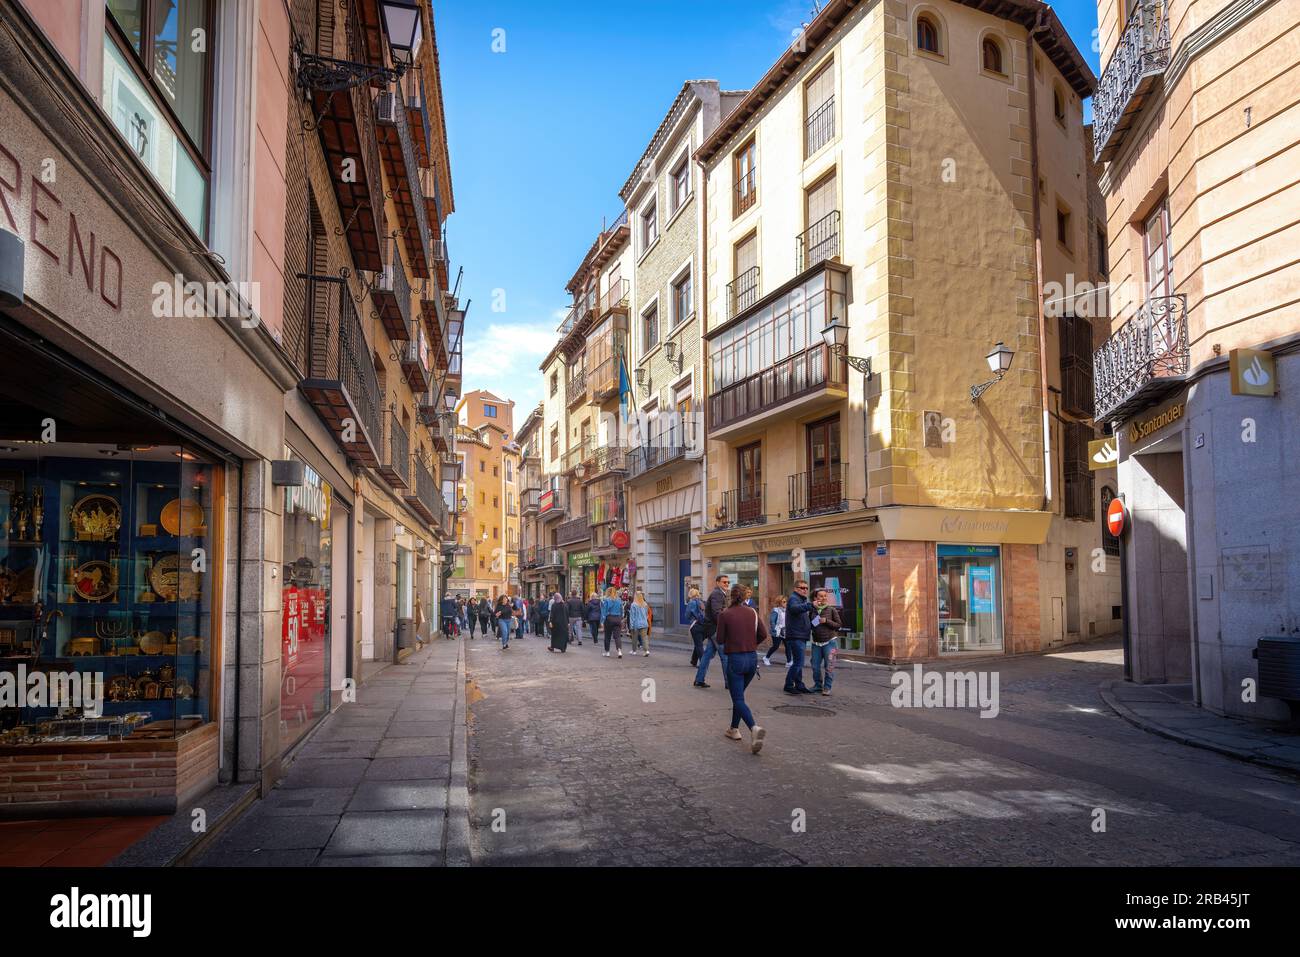 Calle Comercio Street - Toledo, Spain Stock Photo